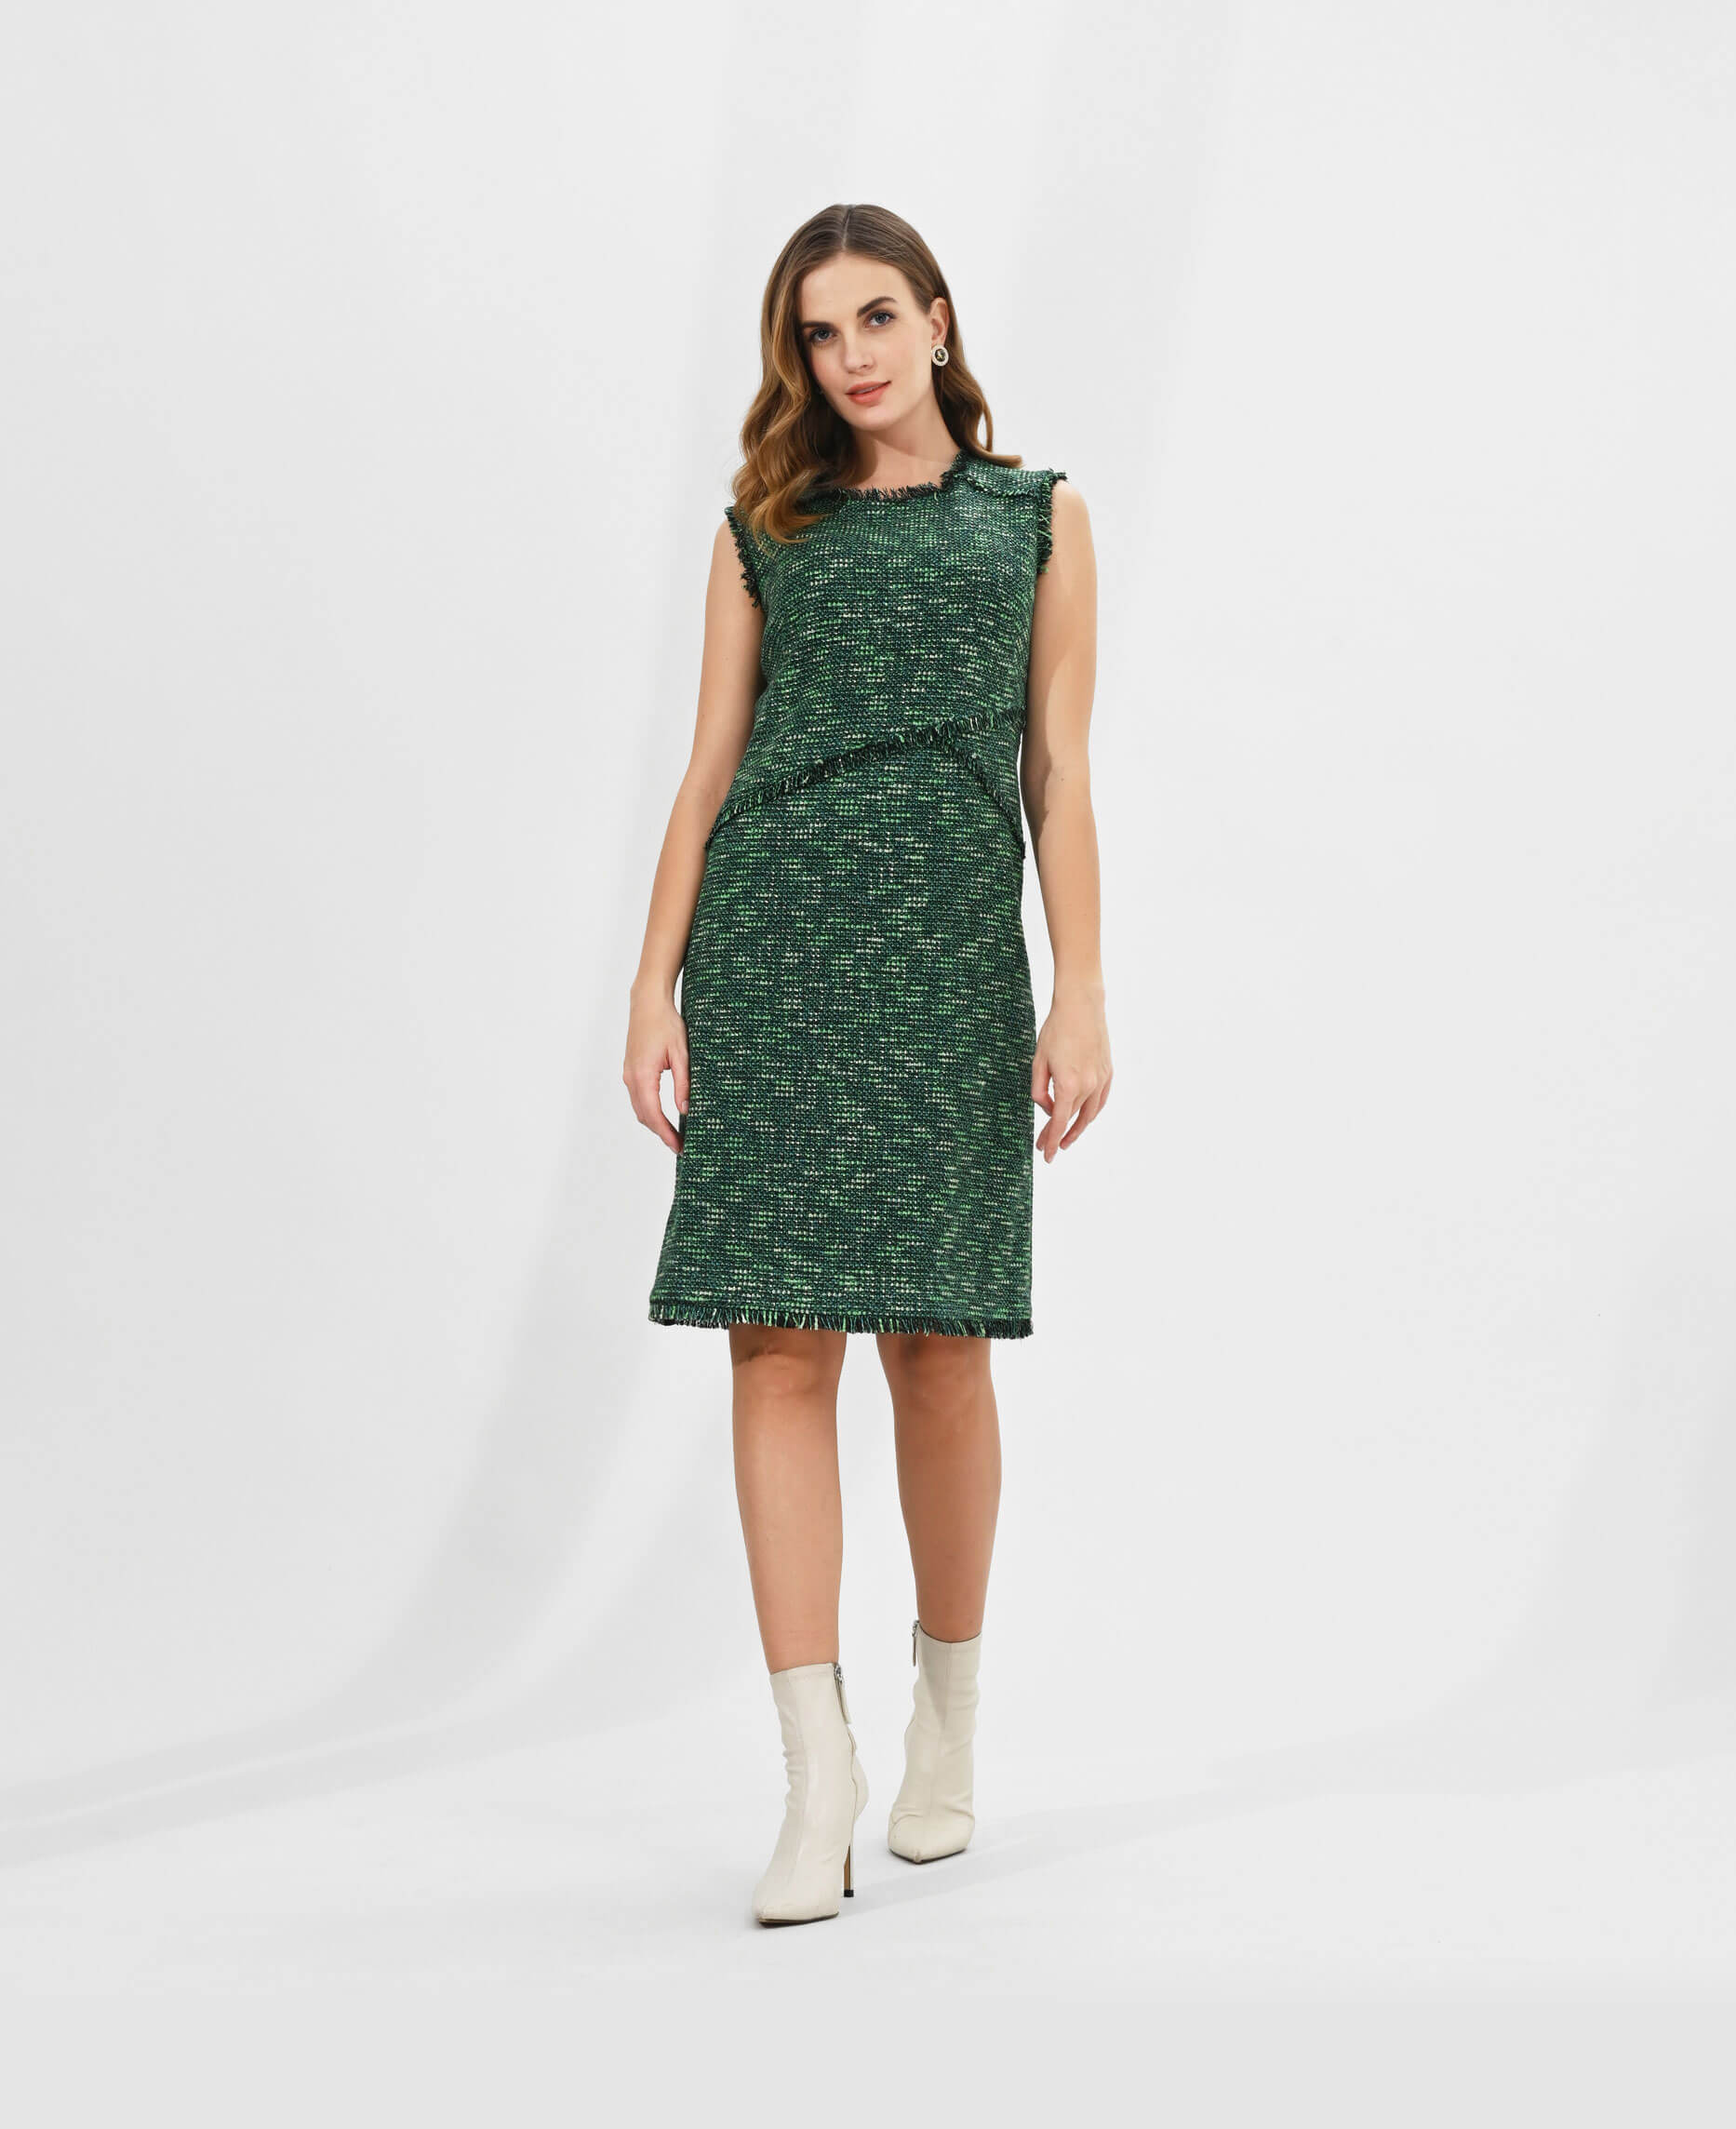 Полуприталенное платье с бахромой Цвет Зеленый